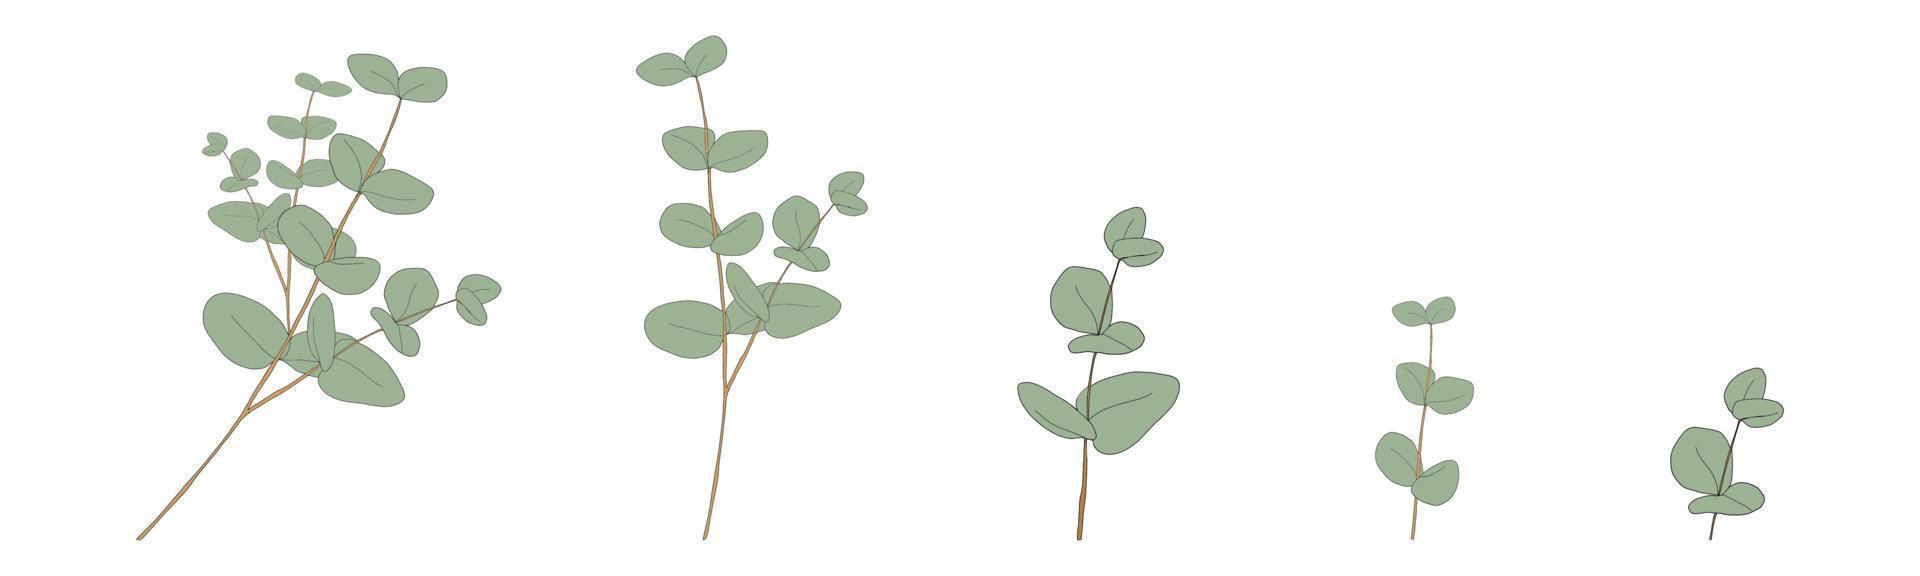 eukalyptusblätter runde form auf branchen.set vektorillustration natürliche grüne blattelemente, eukalyptus populus isoliert auf weißem hintergrund einfaches und niedliches design für textilien oder grußkarten vektor